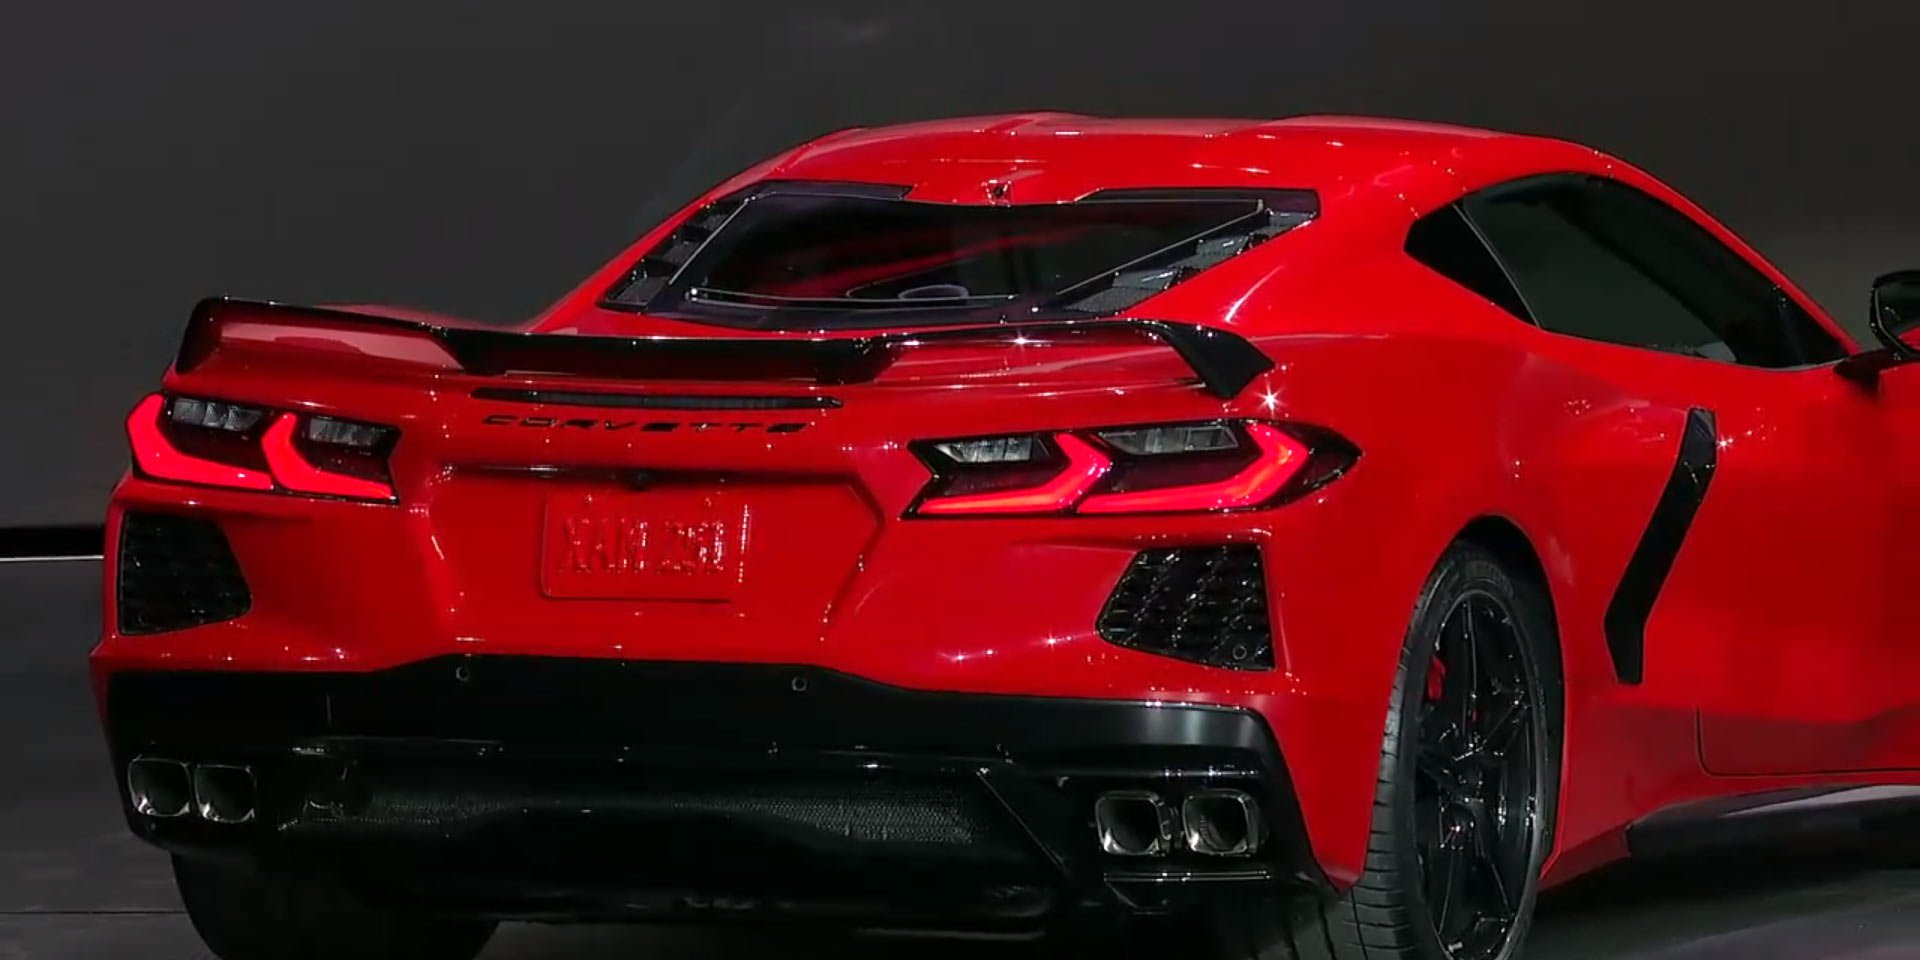 Ortadan motorlu yeni Corvette Stingray tanıtıldı